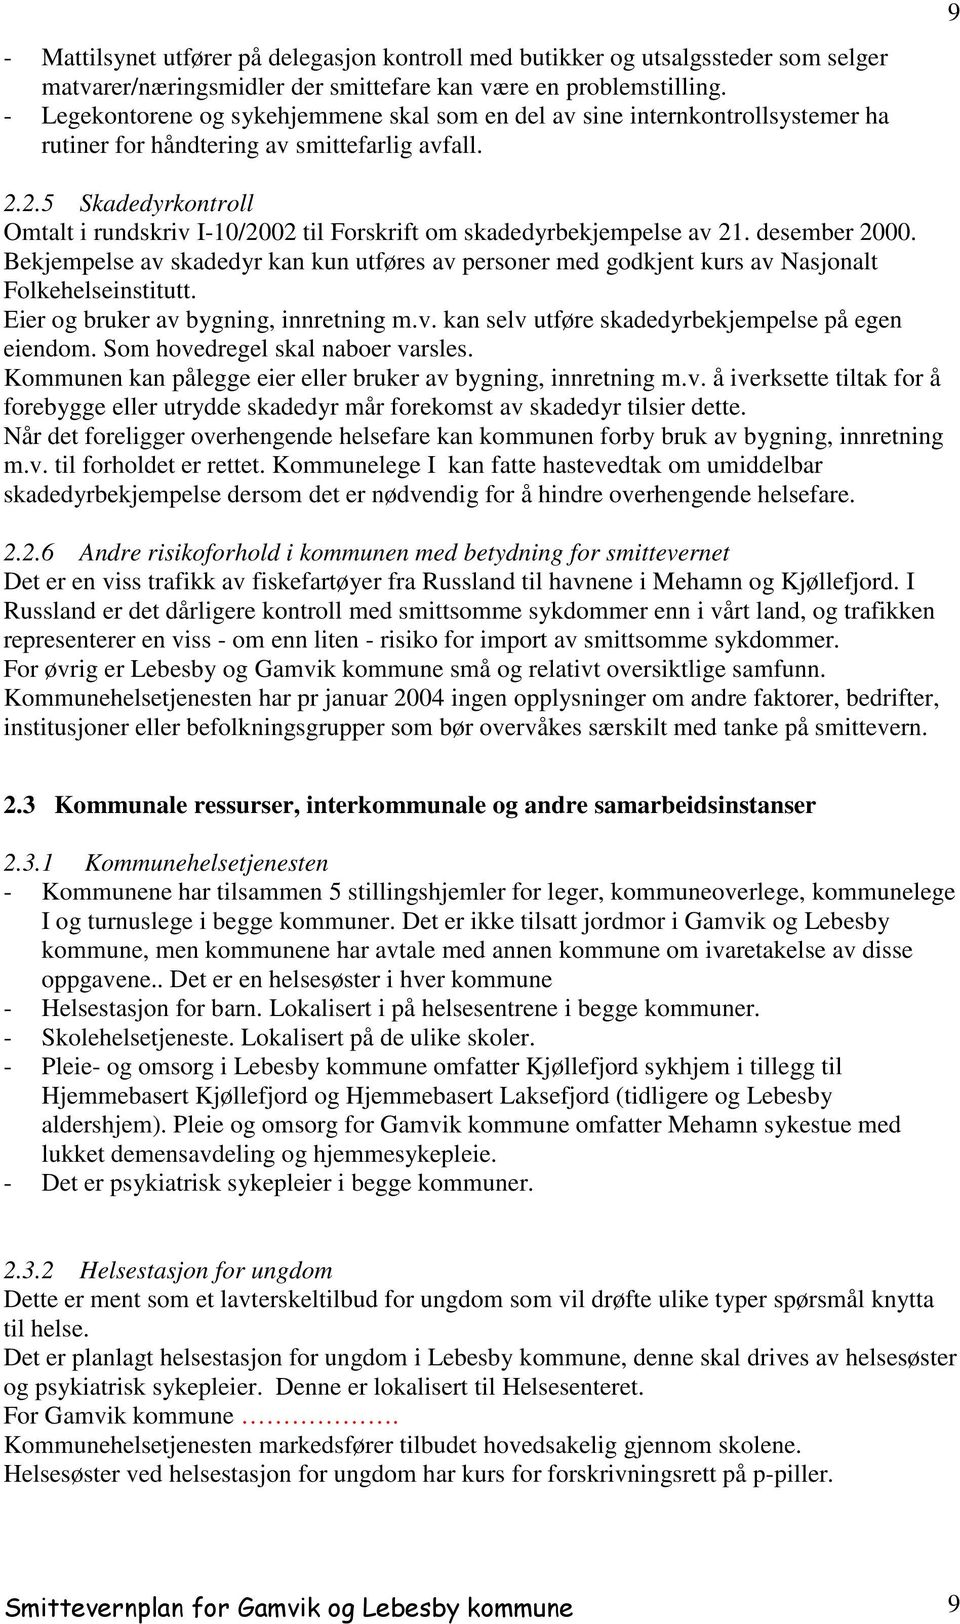 2.5 Skadedyrkontroll Omtalt i rundskriv I-10/2002 til Forskrift om skadedyrbekjempelse av 21. desember 2000.